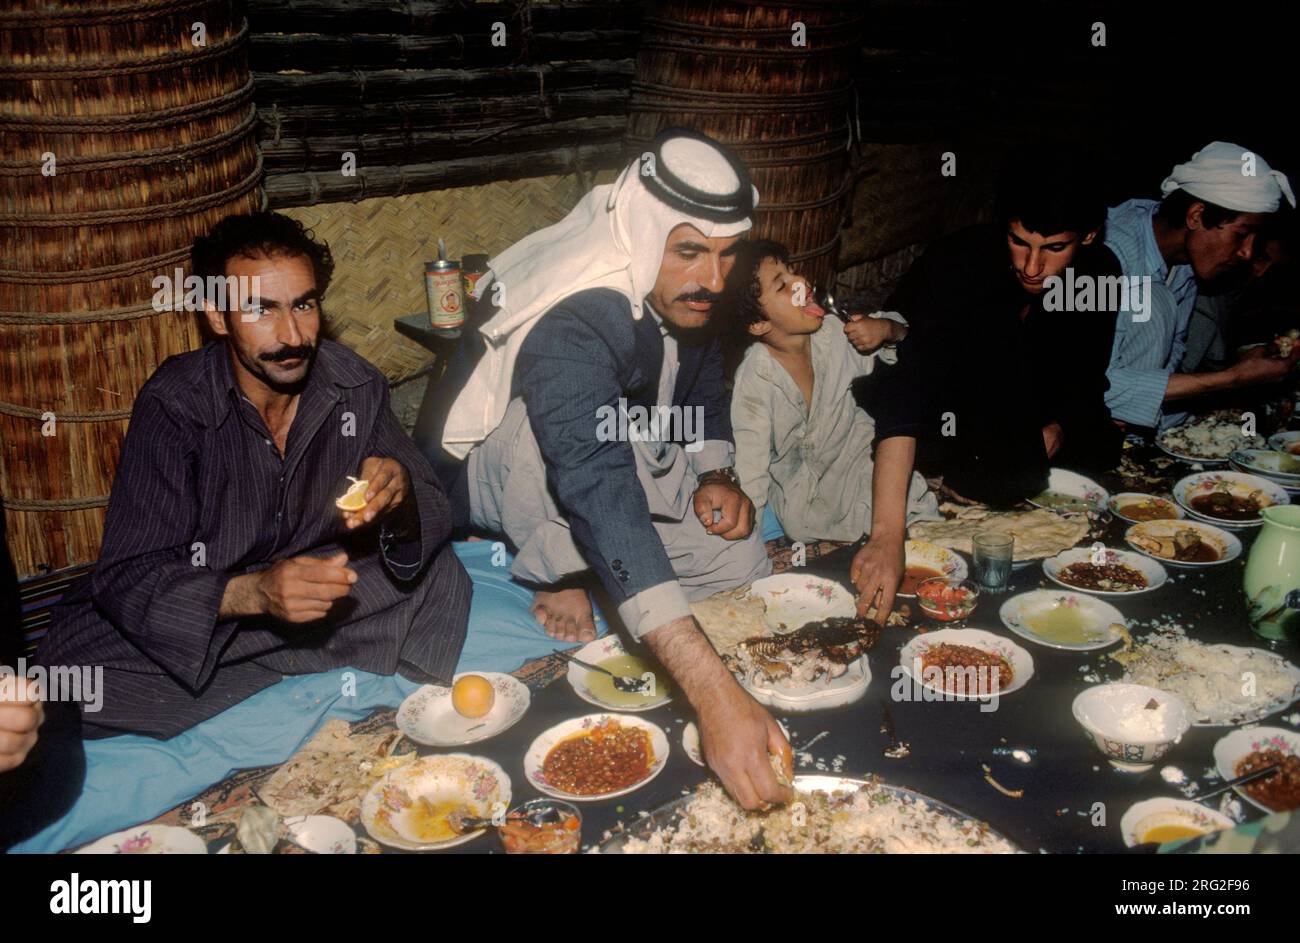 Marsh Arabs Sud Iraq 1984. Il banchetto si svolge in un tradizionale edificio di canne del villaggio chiamato Mudhif. Parteciparono solo i membri maschi della comunità. Si mangia - prendere il cibo con la mano sinistra. Hammar palude l'Iraq degli anni '1980 HOMER SYKES Foto Stock